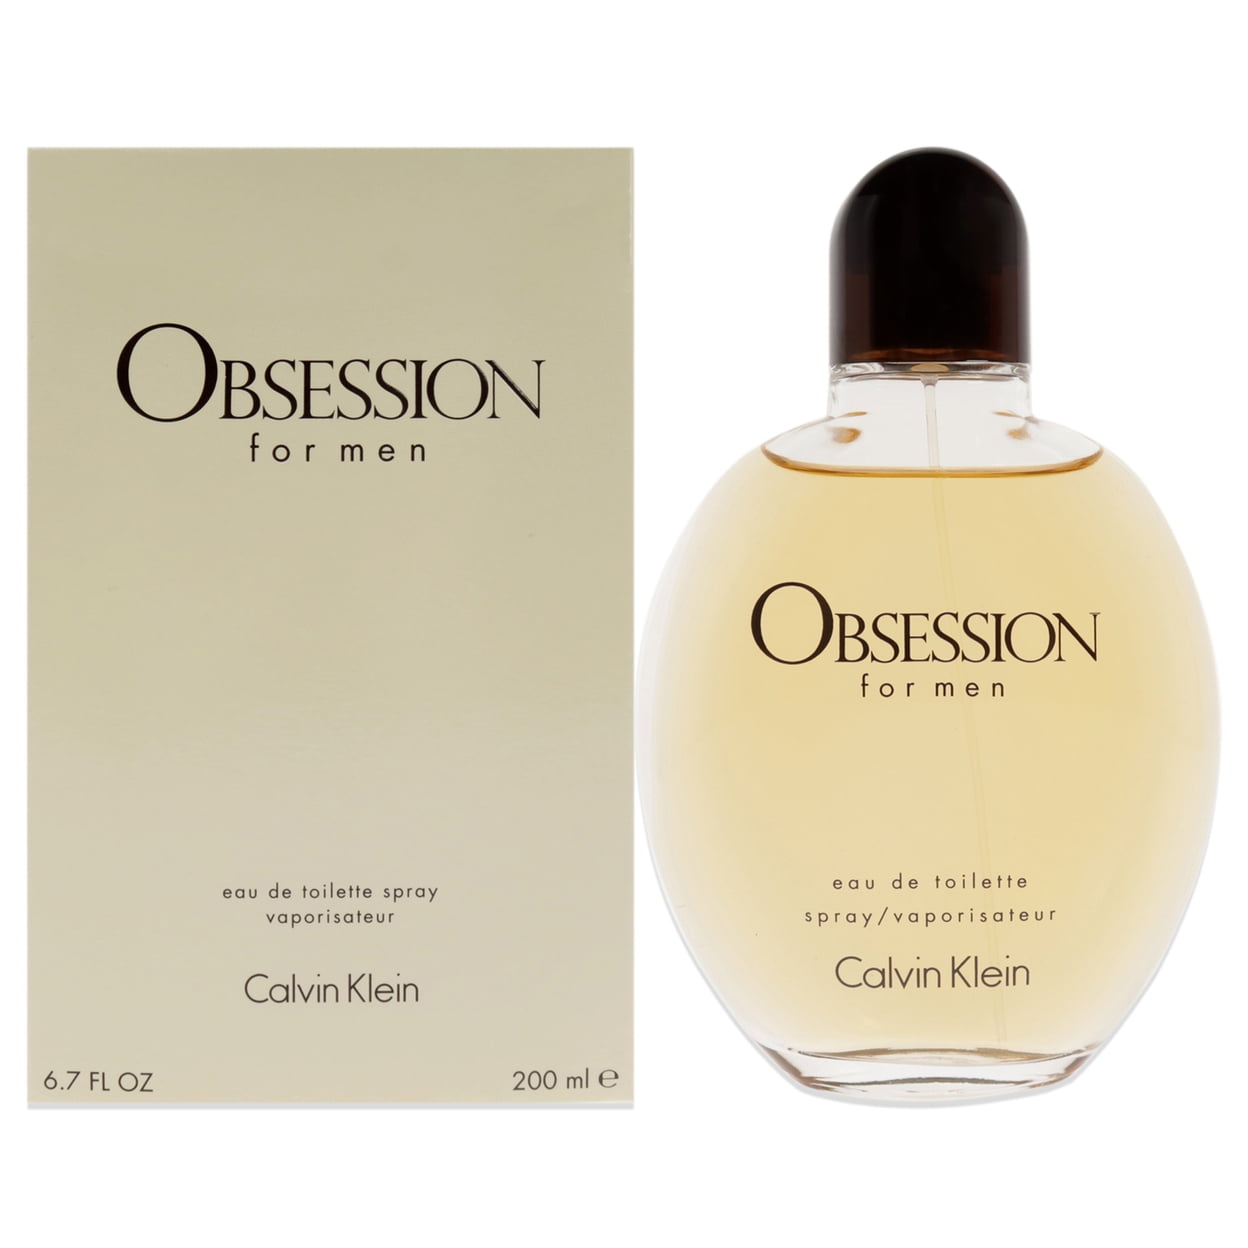 6.7-Oz. Calvin Klein Obsession Eau De Toilette Cologne for Men $33 + Free S&H w/ Walmart+ or $35+